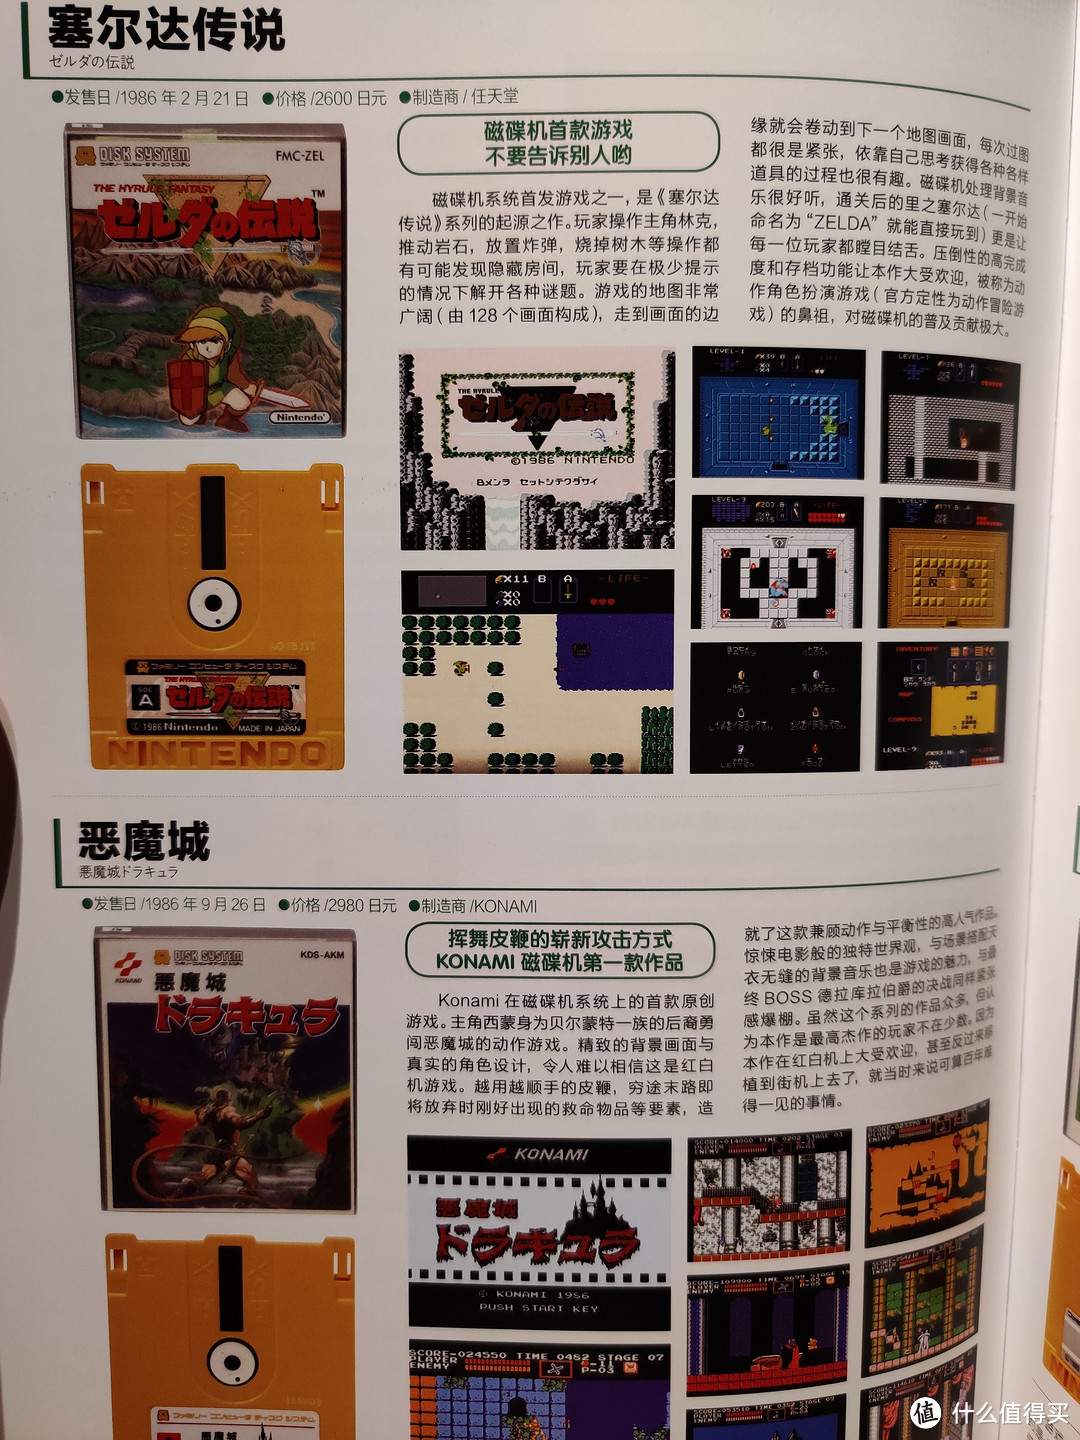 除了红白机游戏，还对所有的磁碟机游戏进行了图鉴介绍，磁碟机里最著名的就是诞生了大名鼎鼎的《塞尔达》系列。